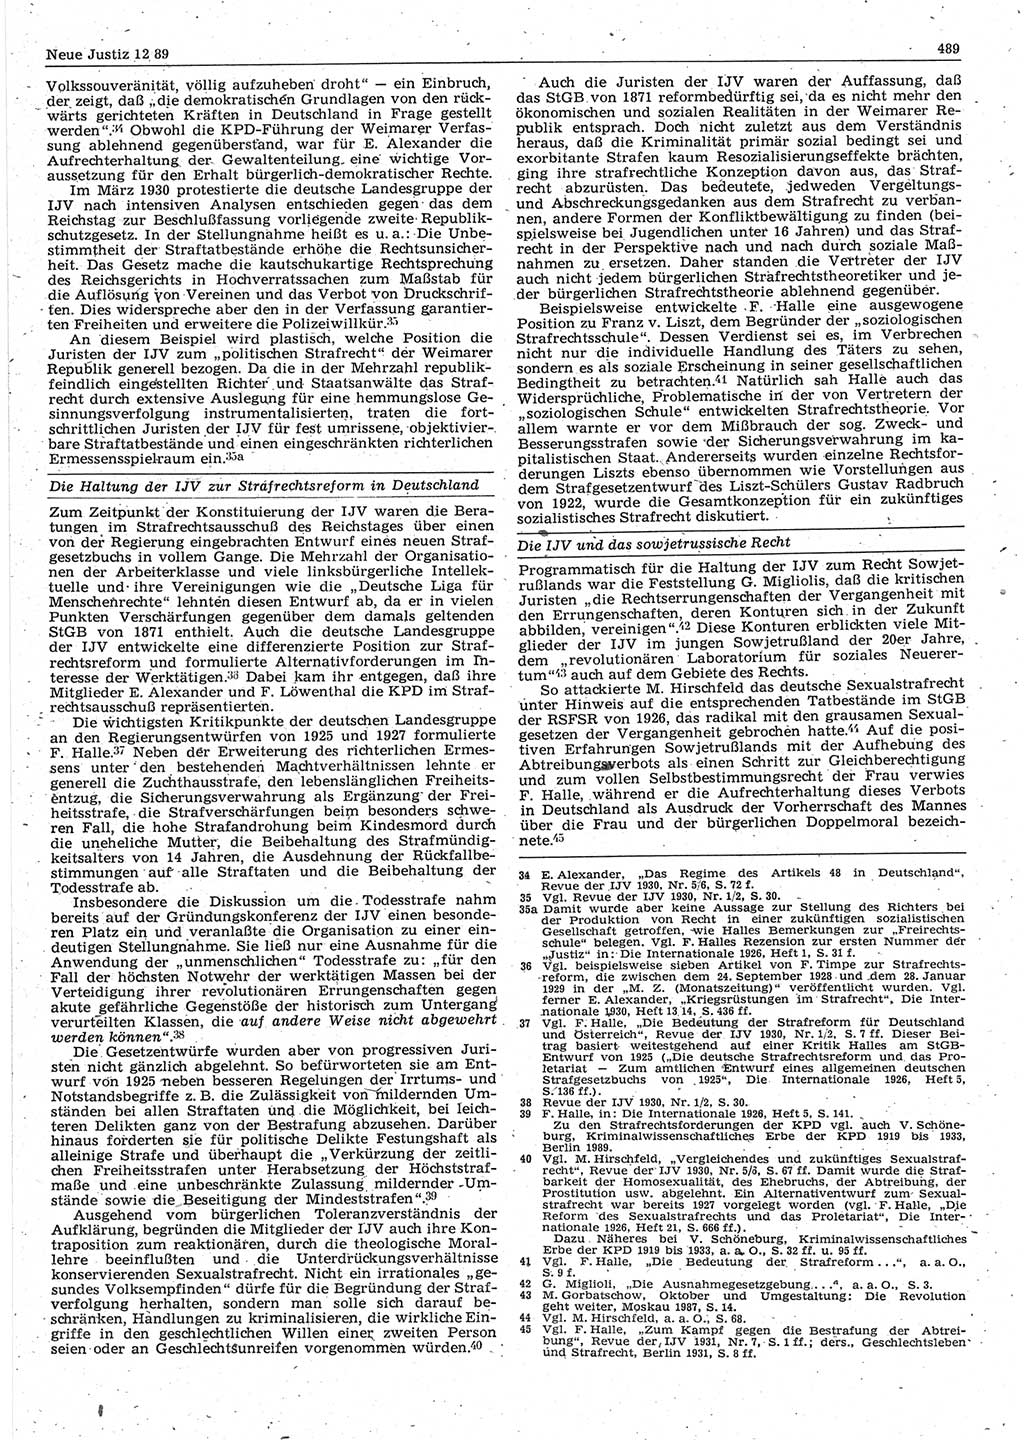 Neue Justiz (NJ), Zeitschrift für sozialistisches Recht und Gesetzlichkeit [Deutsche Demokratische Republik (DDR)], 43. Jahrgang 1989, Seite 489 (NJ DDR 1989, S. 489)